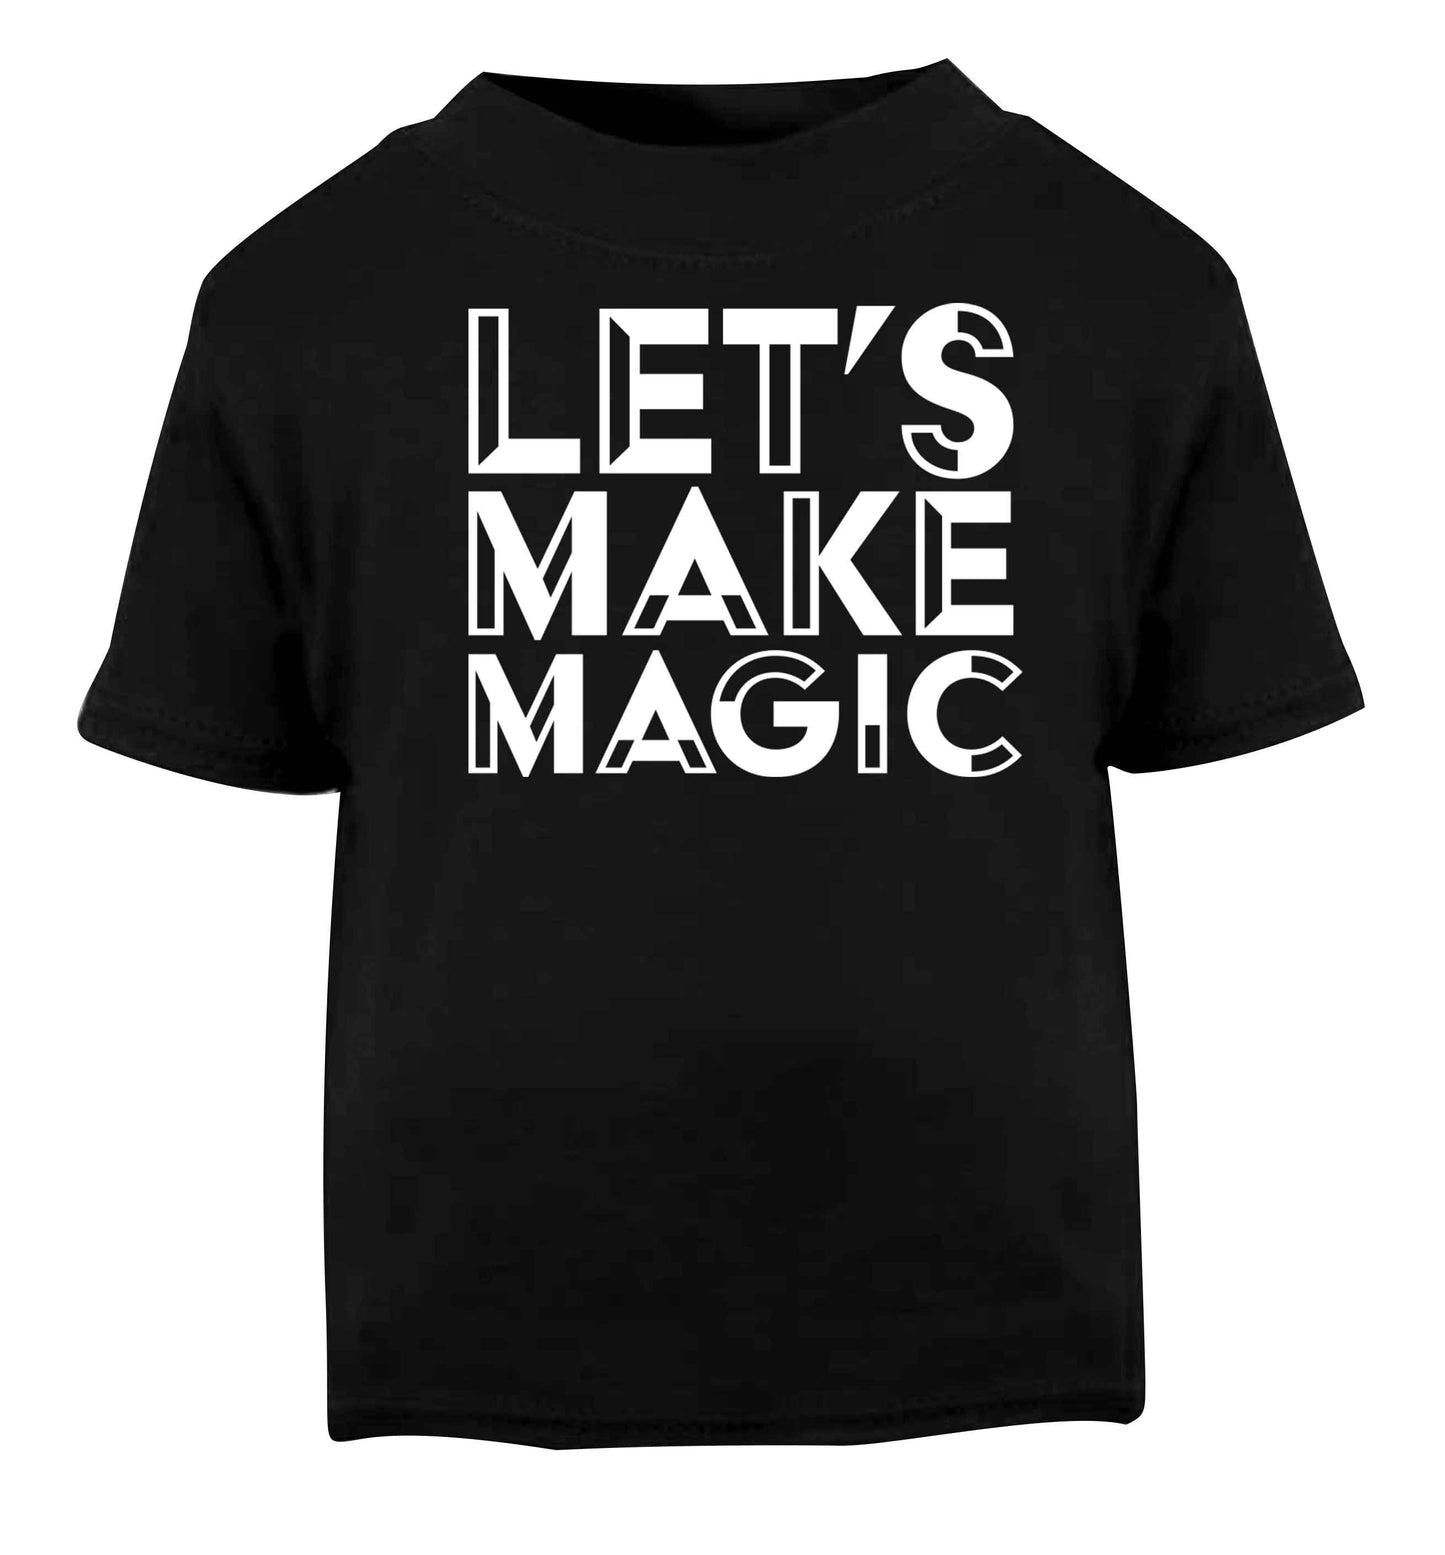 Let's make magic Black baby toddler Tshirt 2 years